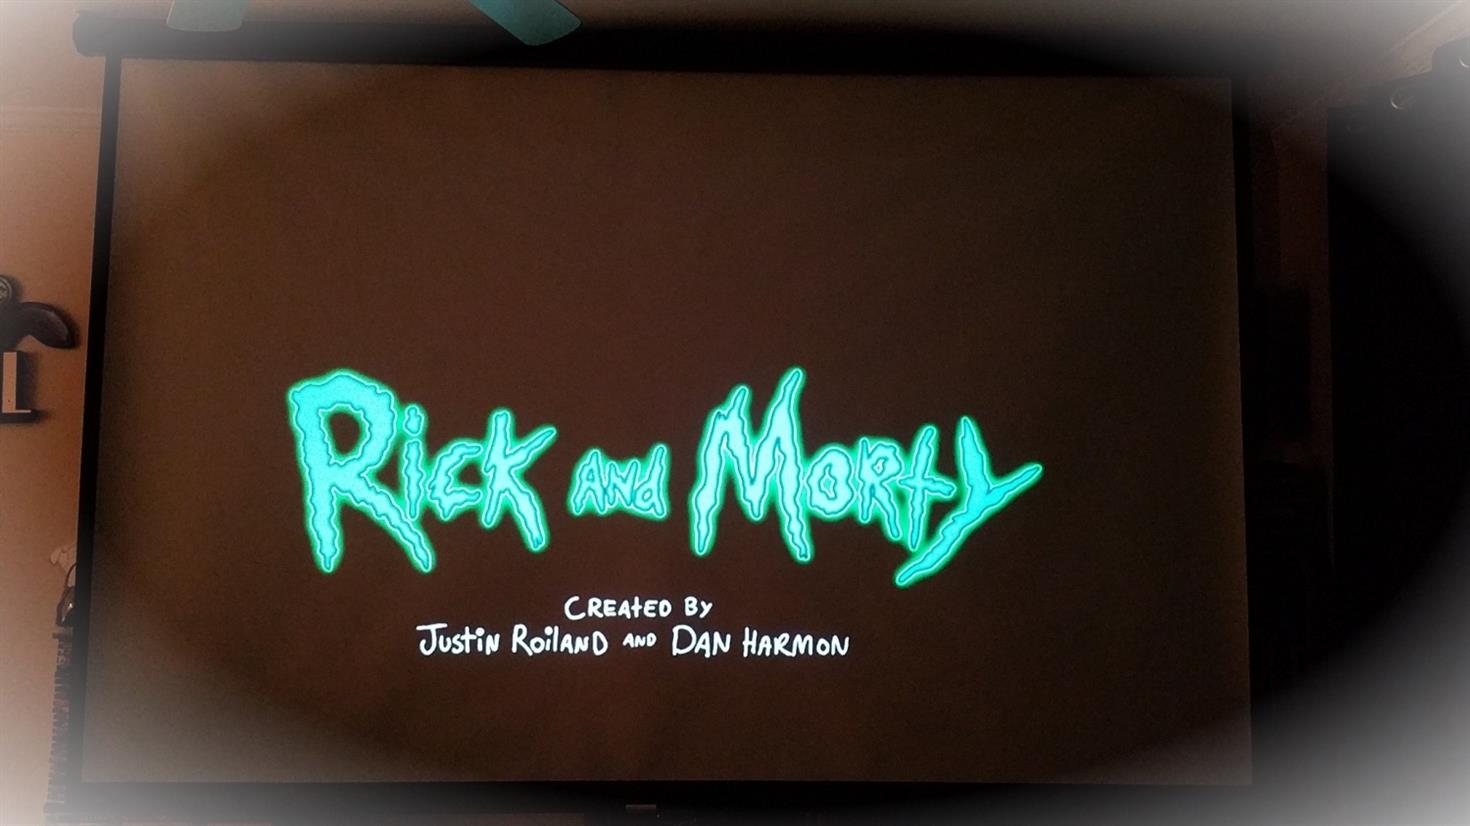 Mise a jour de la saison 5 de Rick et Morty Adult Swim diffuse uneaVXNAC 1